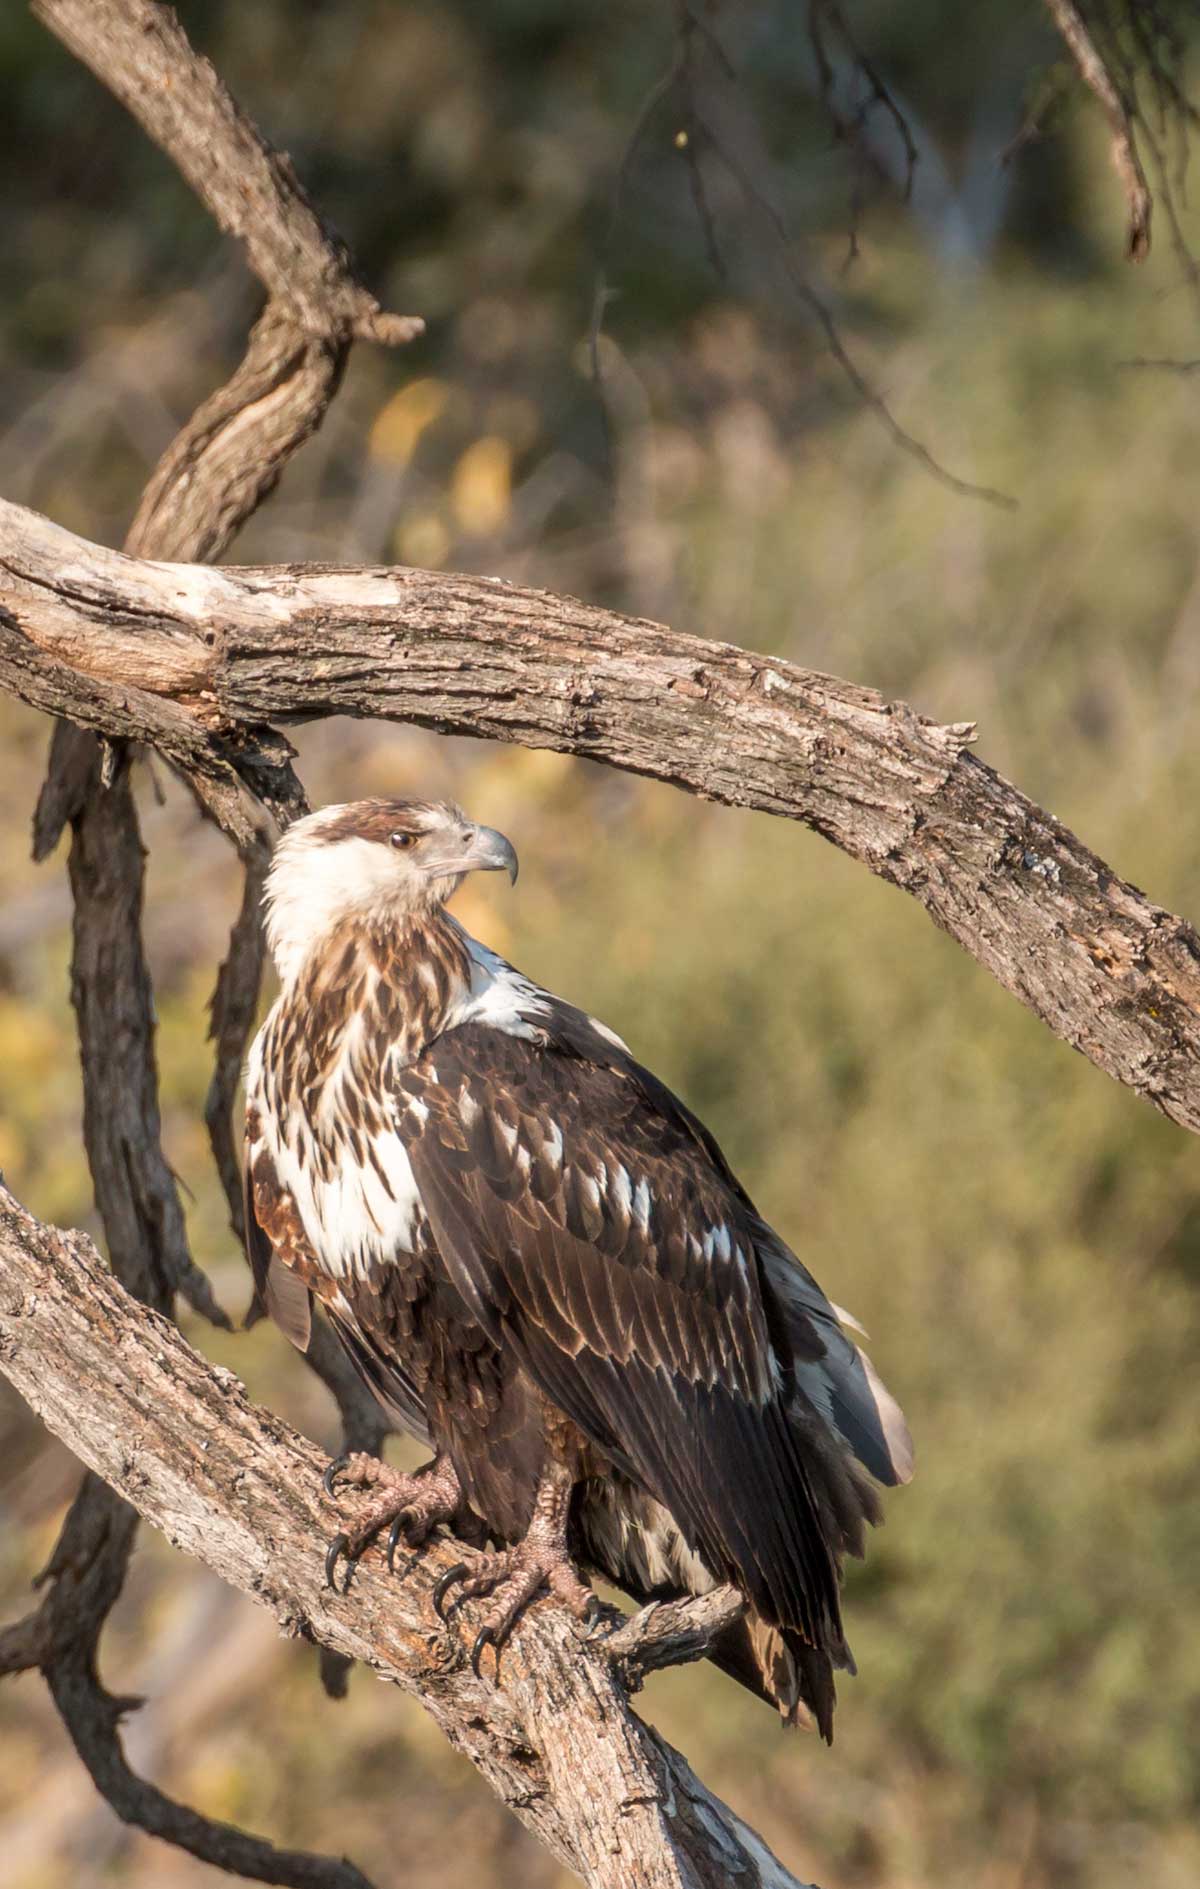 Juvenile Fish eagle in Botswana (credit Rachel Lang)